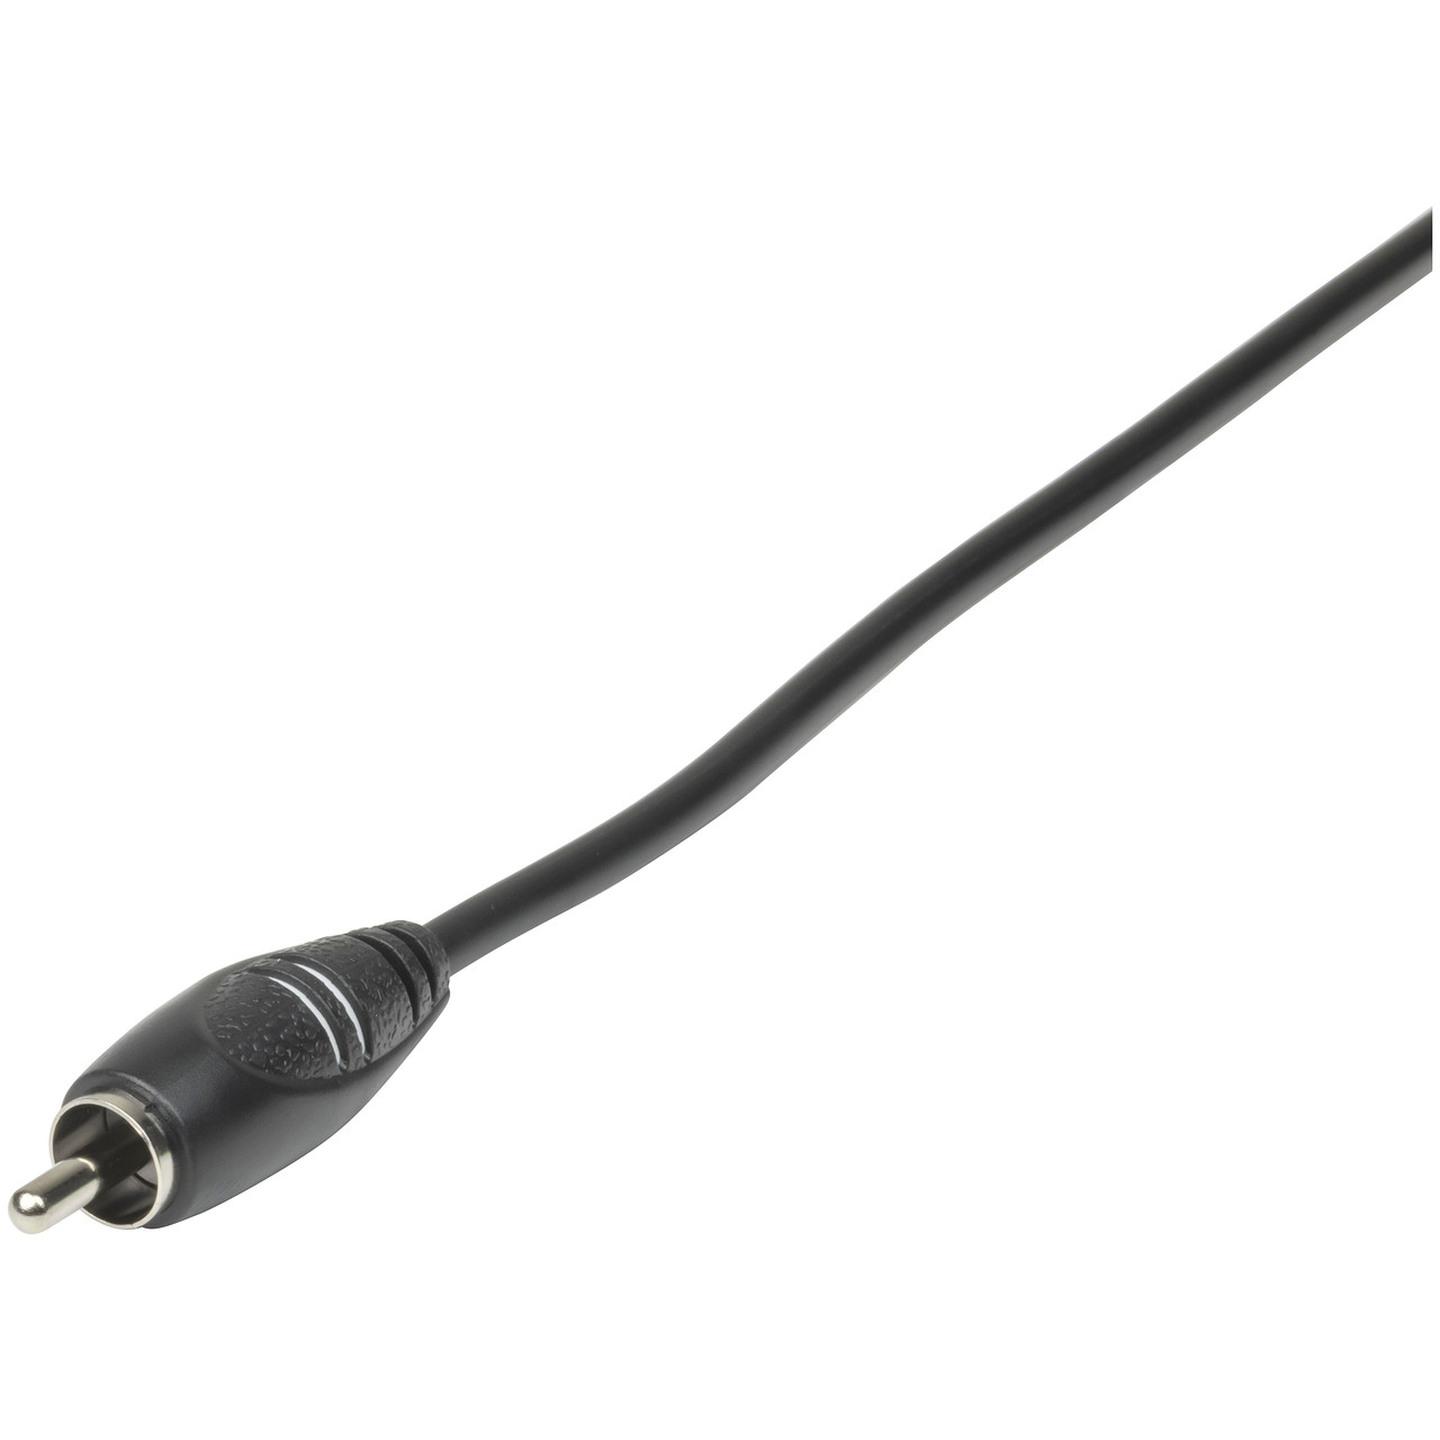 RCA Plug to 3.5mm Plug Audio Cable - 1.5m